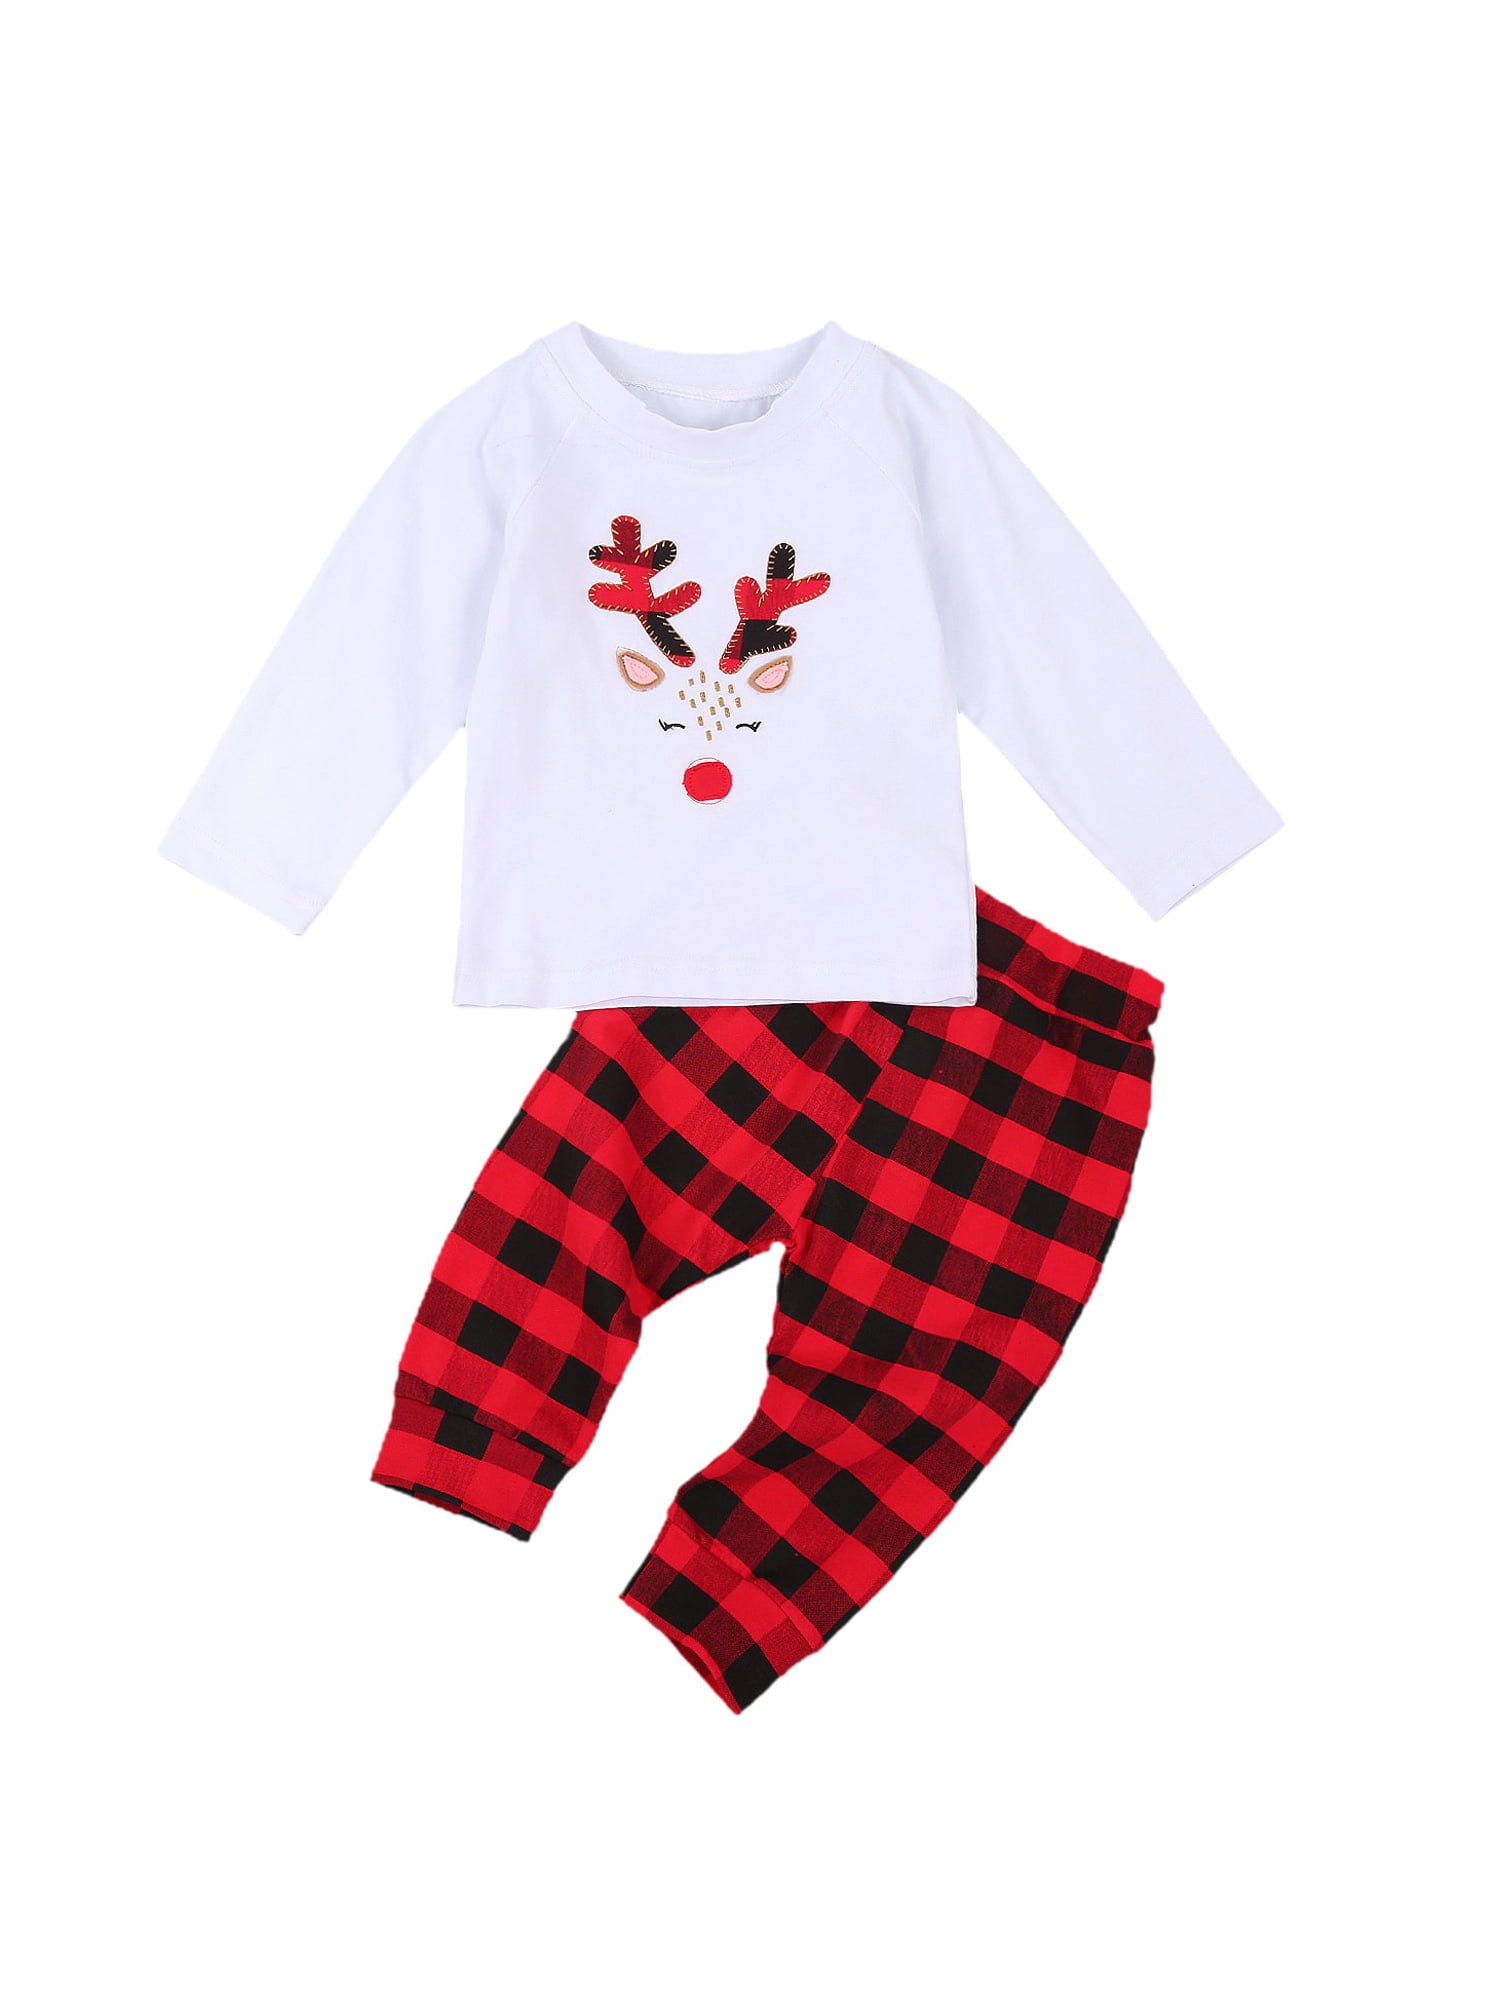 Baby Boy Girl 2pcs Christmas Suit Hoodies Deer Print Long Sleeve Top+Plaid Pants